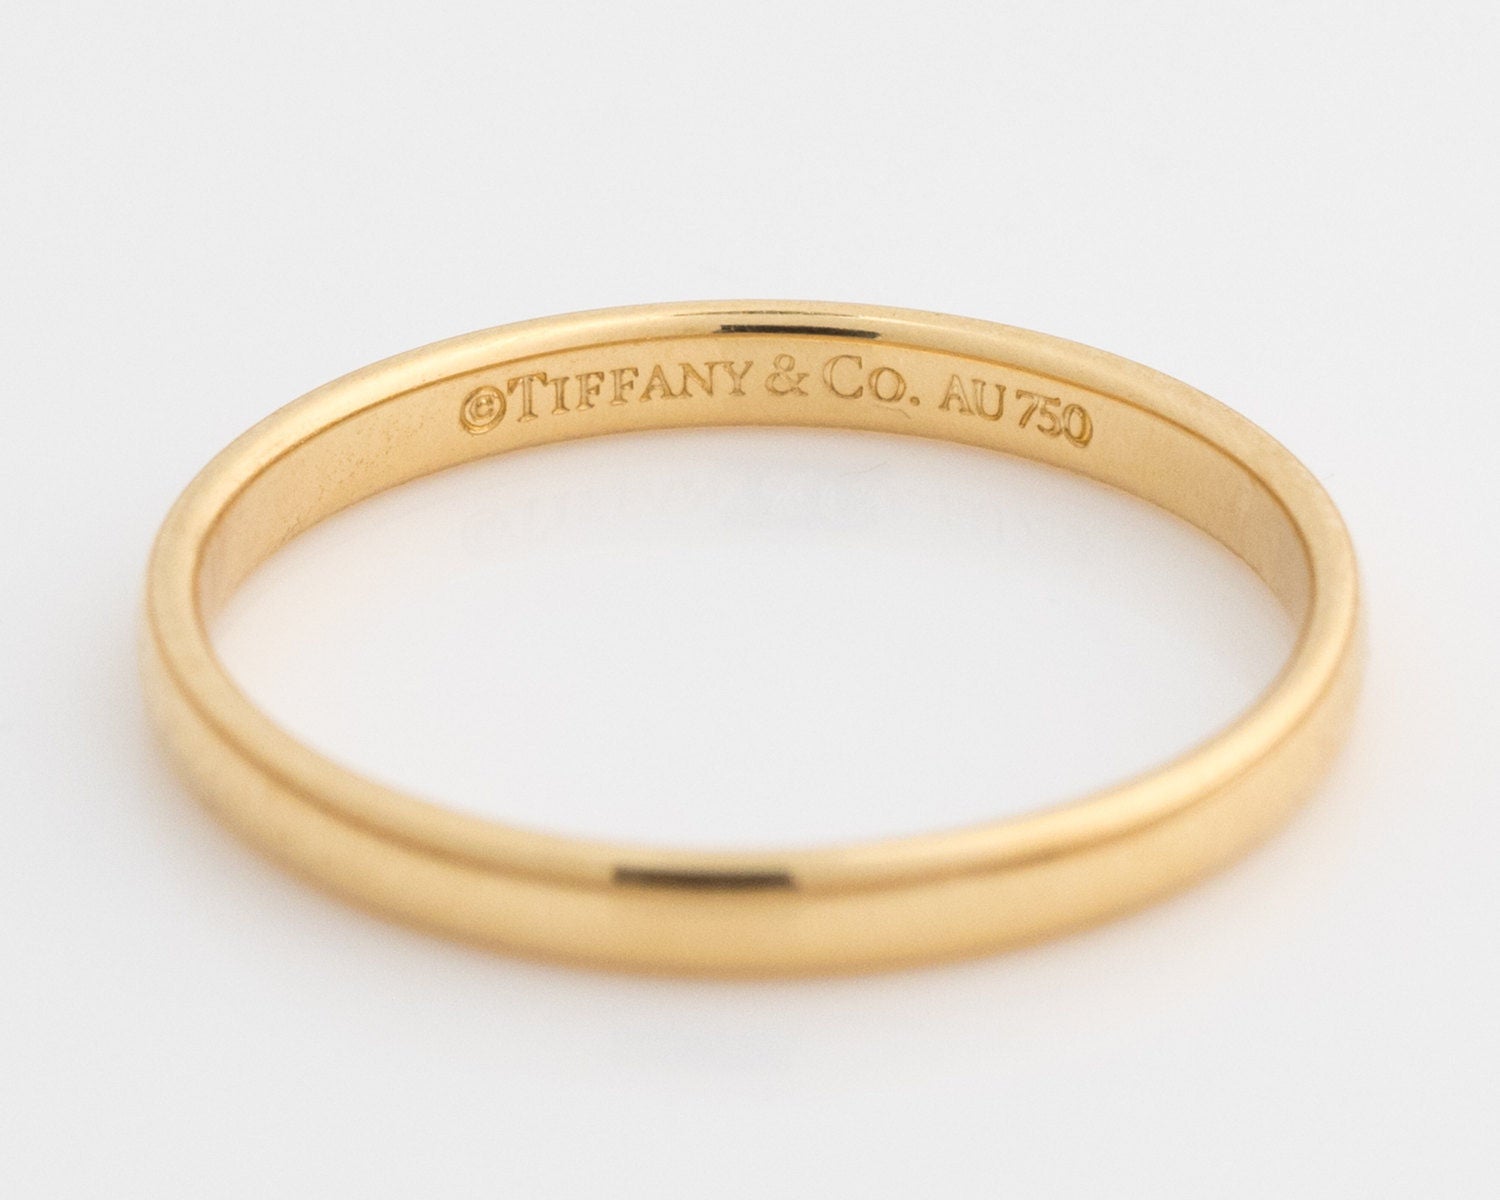 tiffany 750 ring